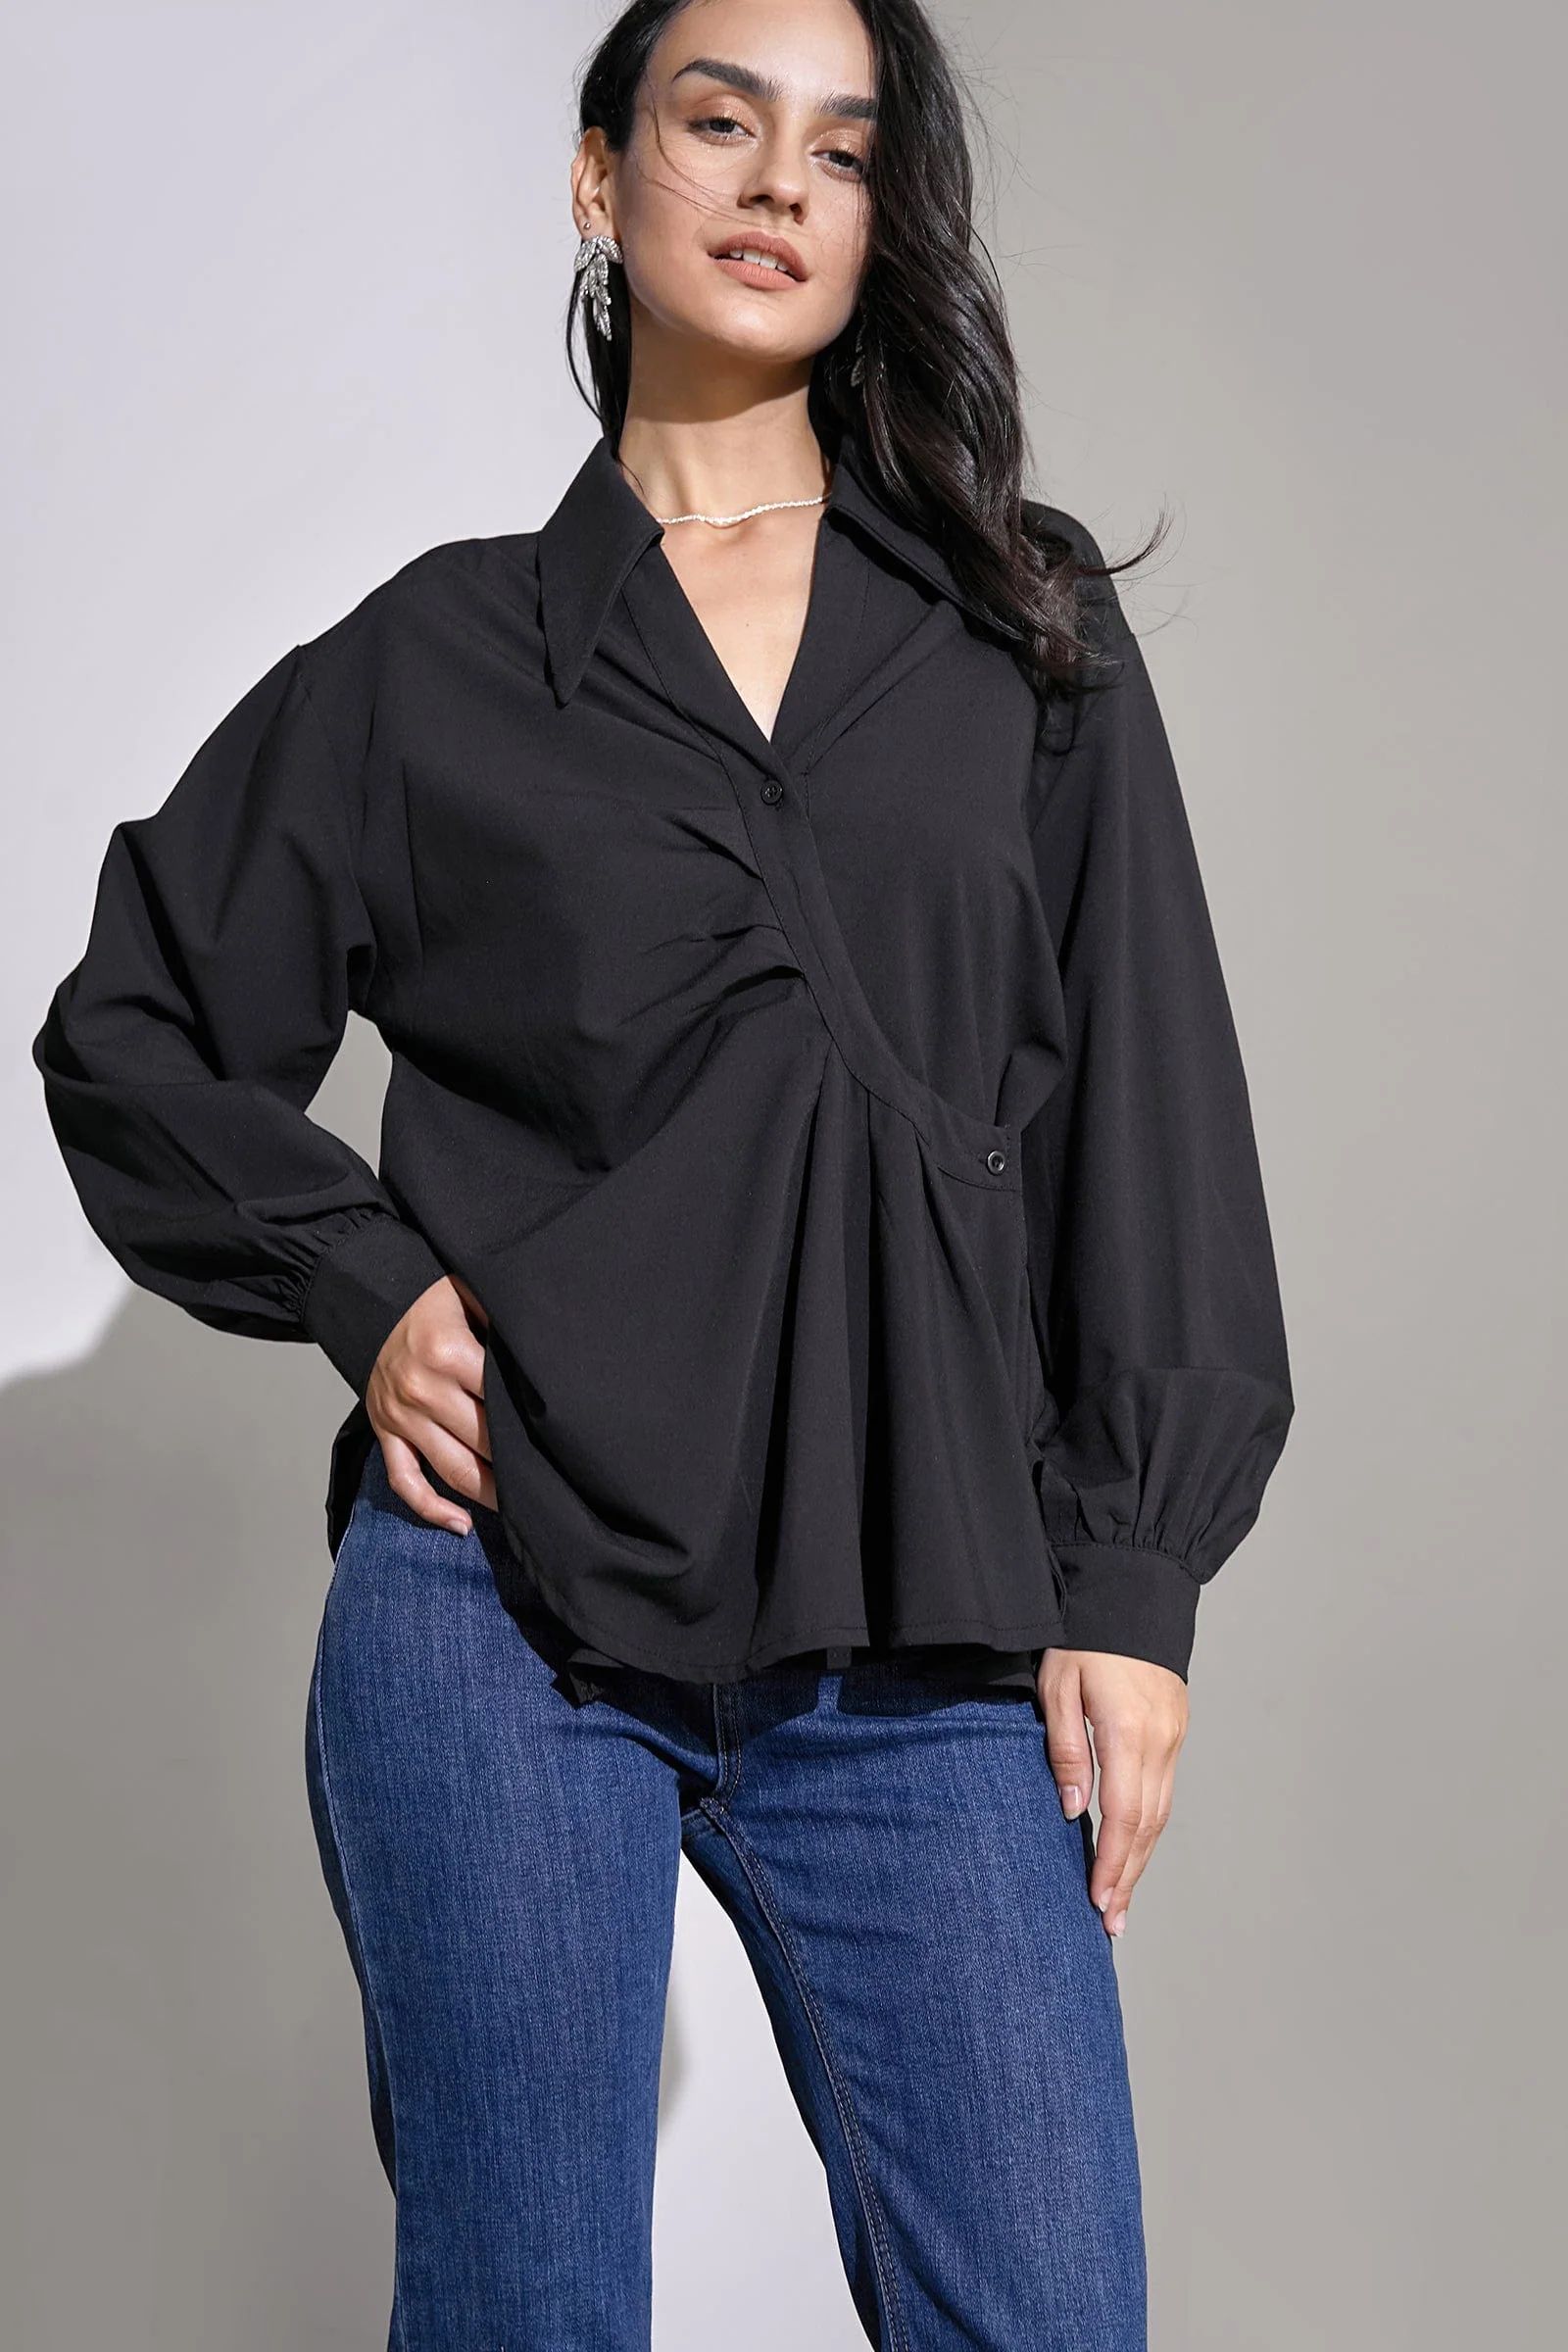 Whitlee Black Frilly Shirt | J.ING